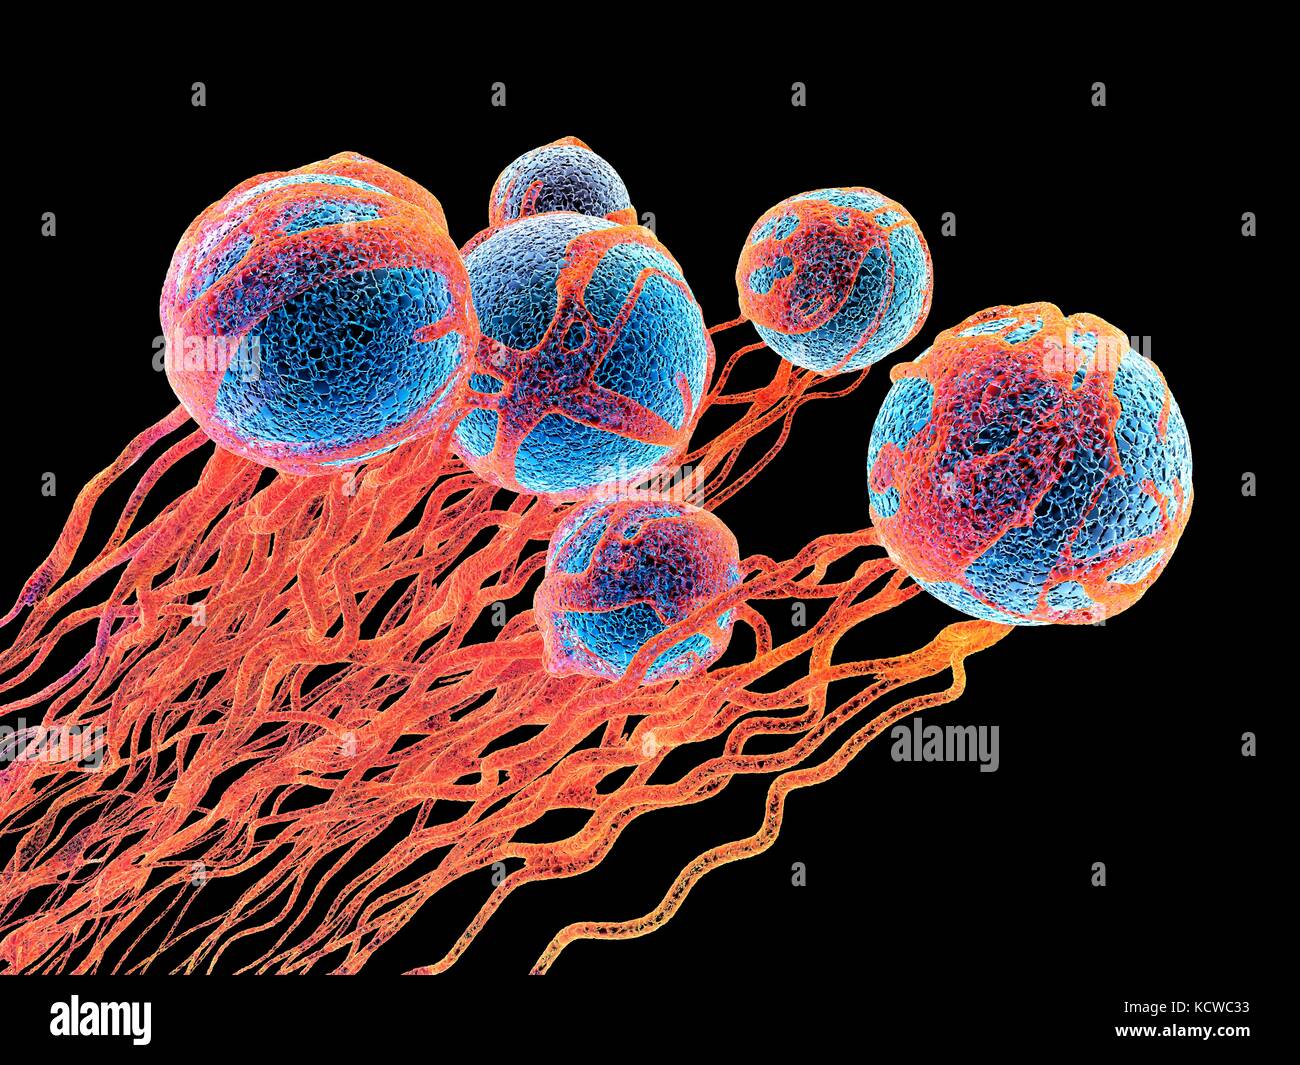 Krebszellen. Computer Abbildung von Krebszellen, die die Bildung von Blutgefäßen, die die Zellen mit oxygens und nutrigens. Die Zellen mit ihrer Kerne werden in Blau dargestellt. Stockfoto